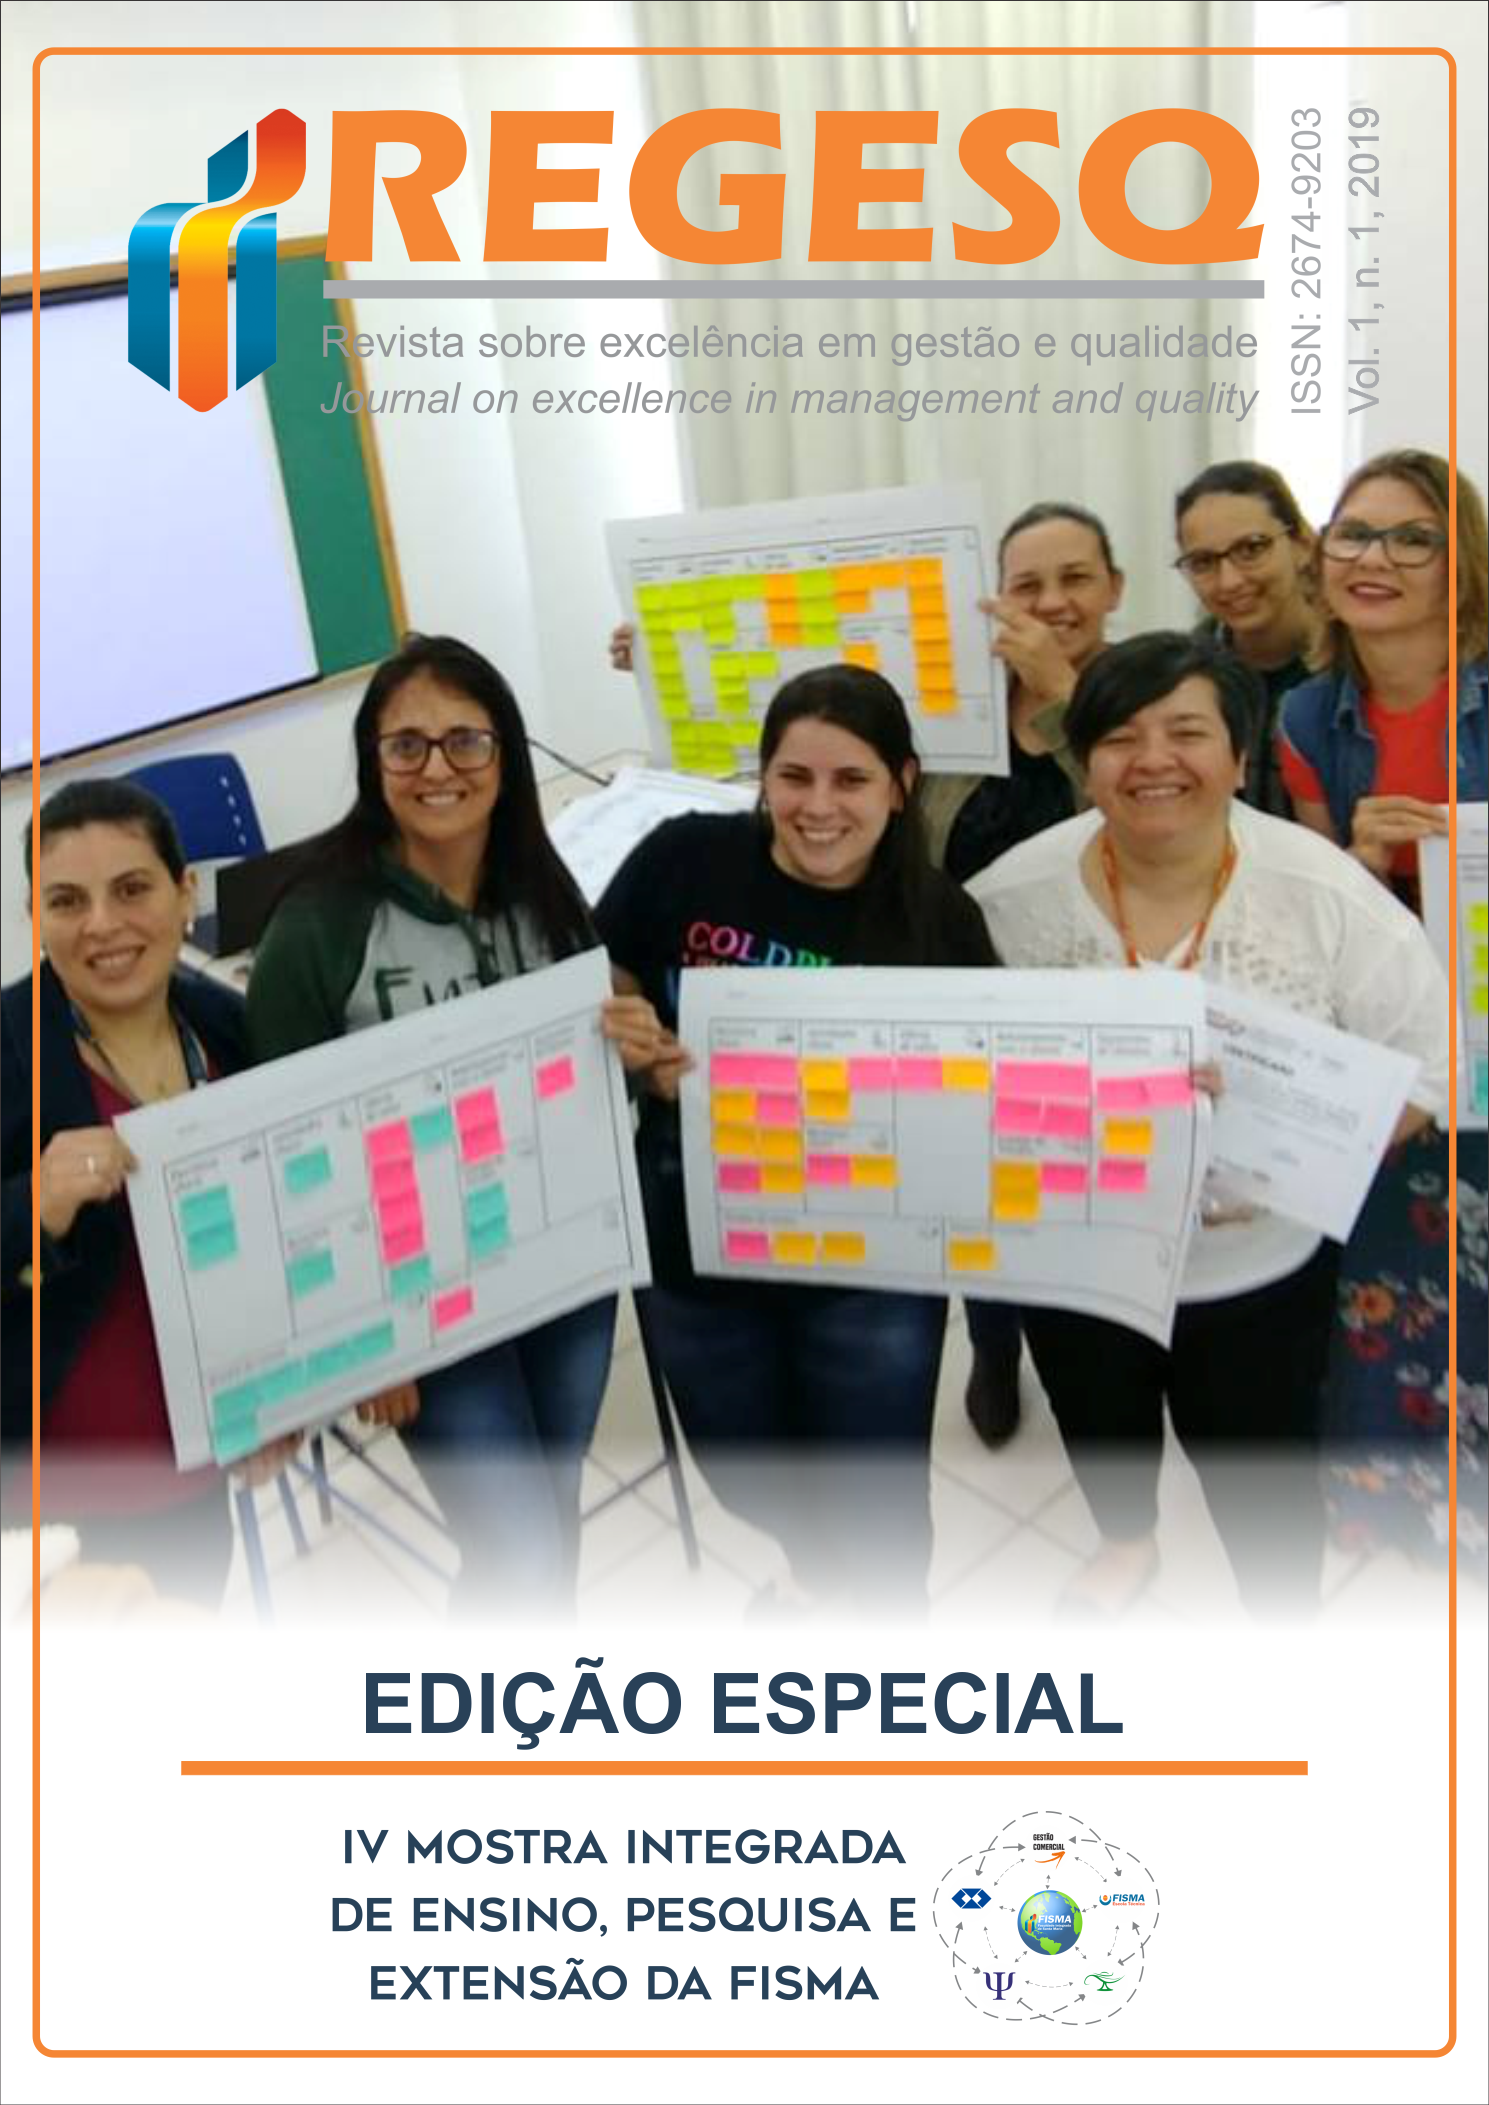 Capa da Edição Especial de lançamento da Revista sobre Excelência em Gestão e Qualidade, com uma turma de alunos participando da IV Mostra Integrada de Ensino, Pesquisa e Extensão da FISMA, realizada em 2018.